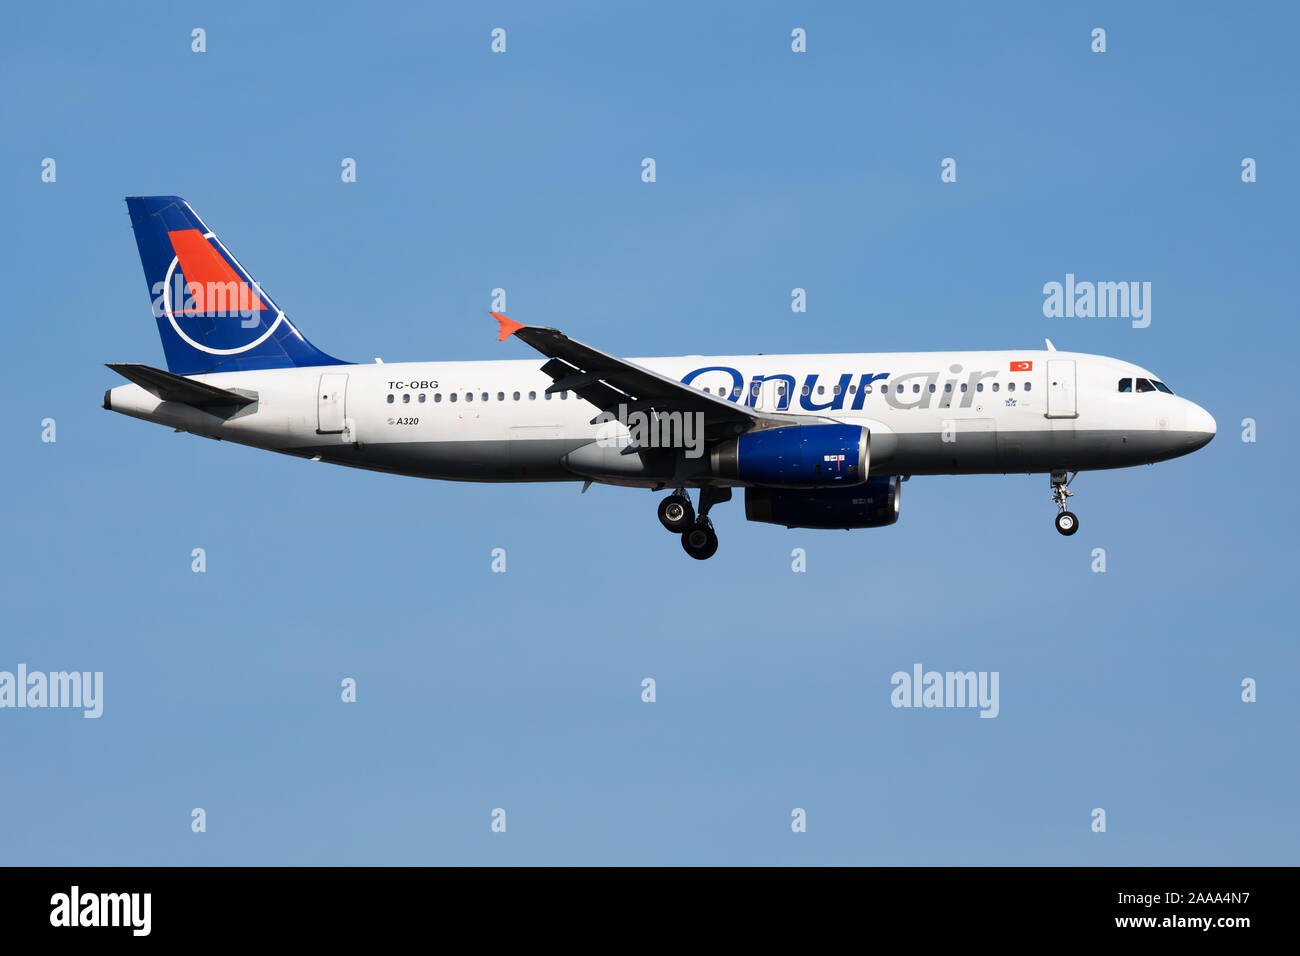 Istanbul / Turkey - Marzo 28, 2019: Onur Air Airbus A320 TC-OBG avión de pasajeros de llegada y aterrizar en el aeropuerto de Ataturk de Estambul Foto de stock